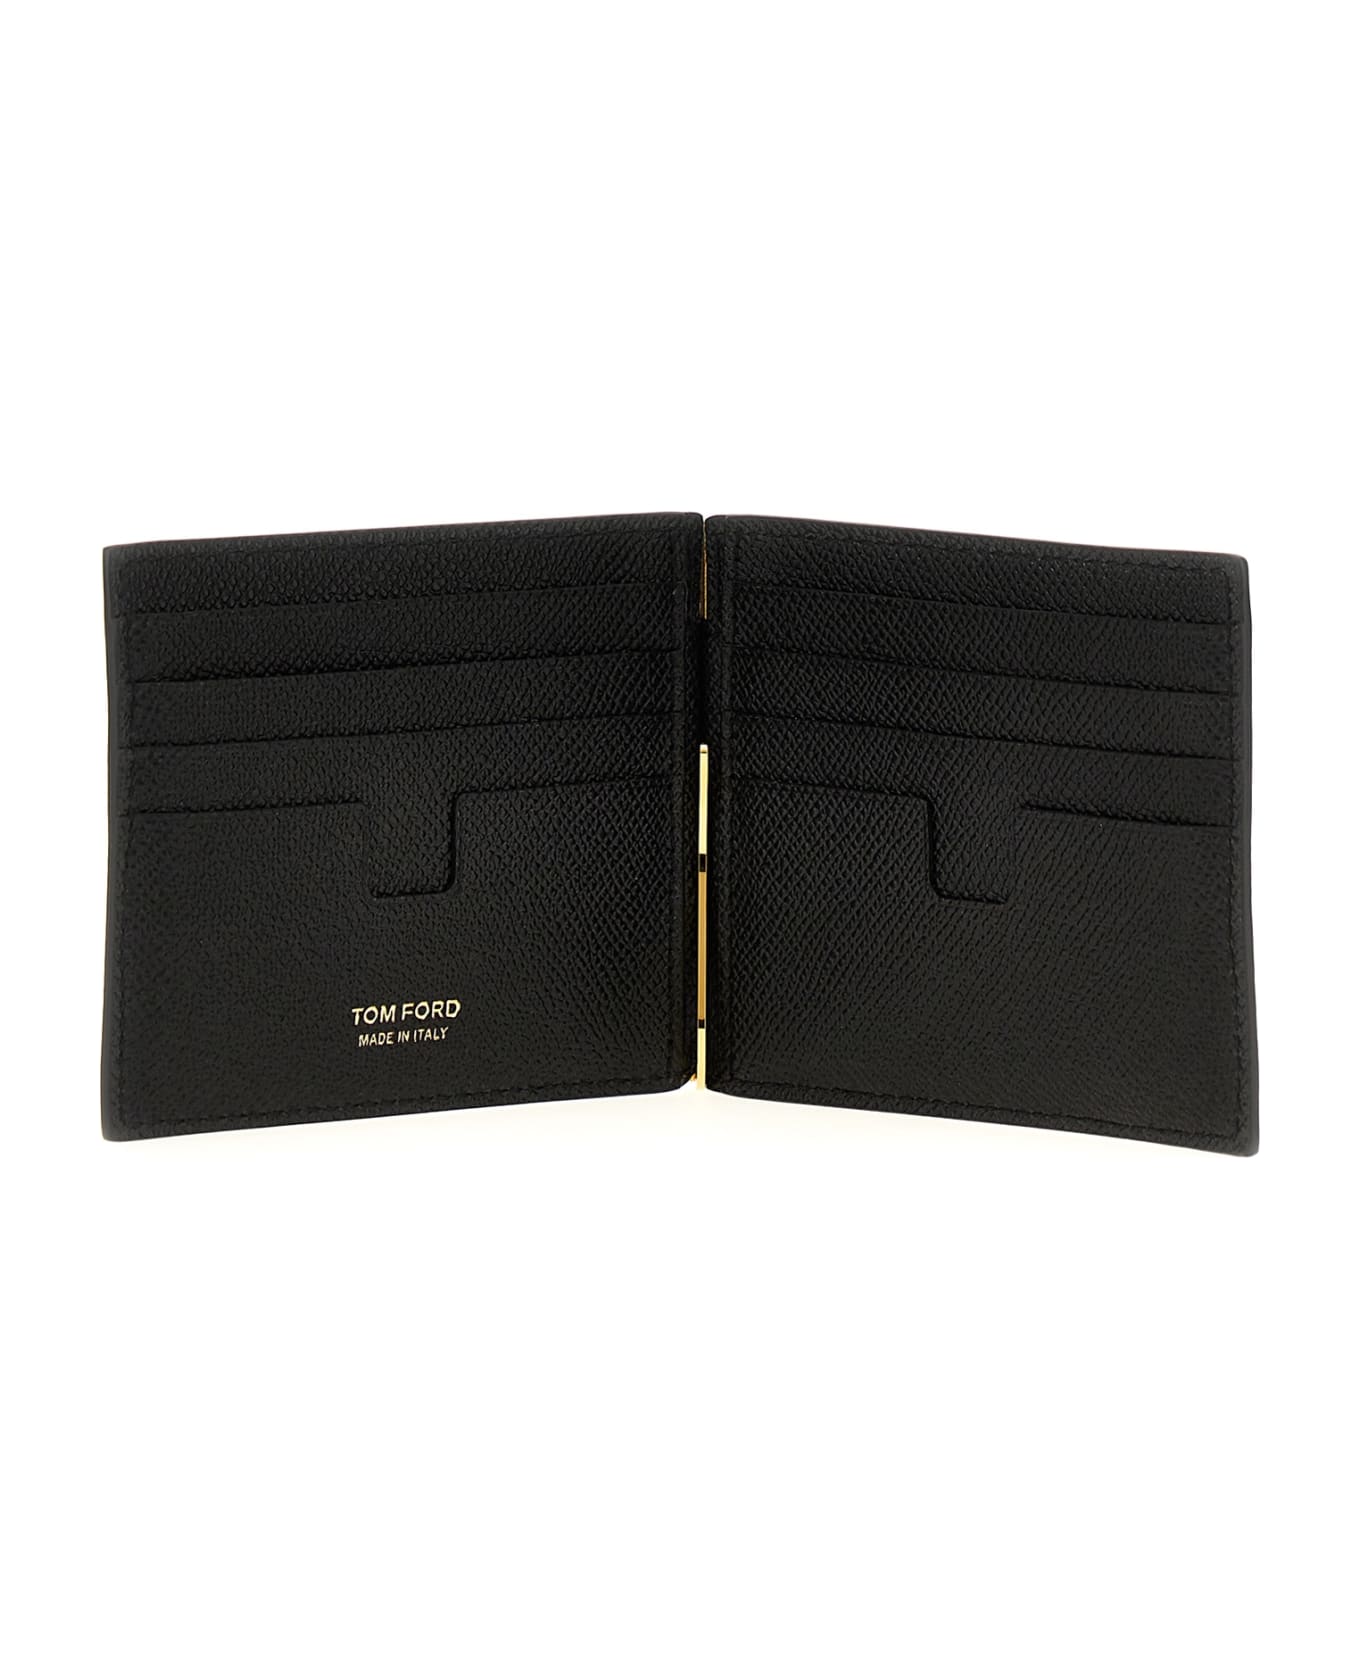 Tom Ford Logo Leather Cardholder - Black 財布